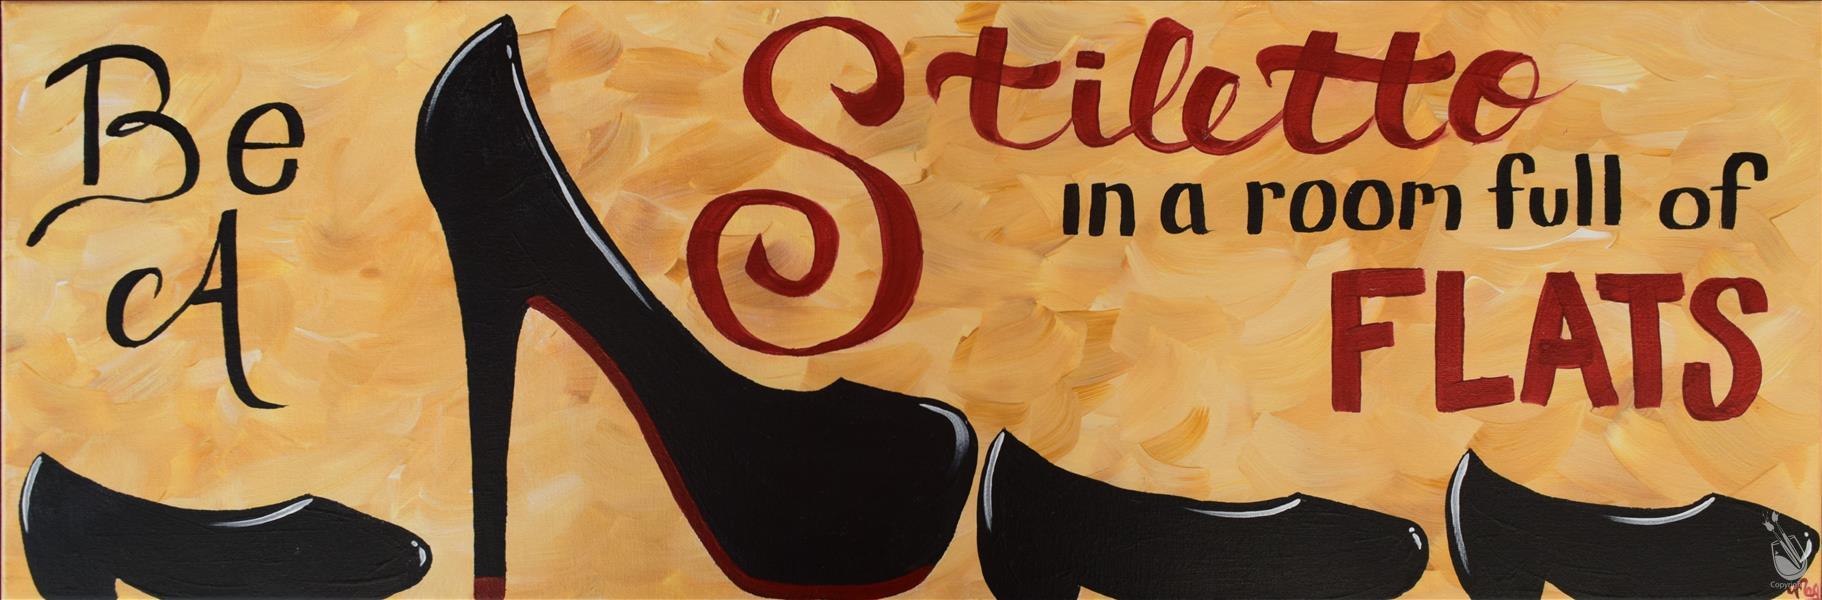 Be A Stiletto